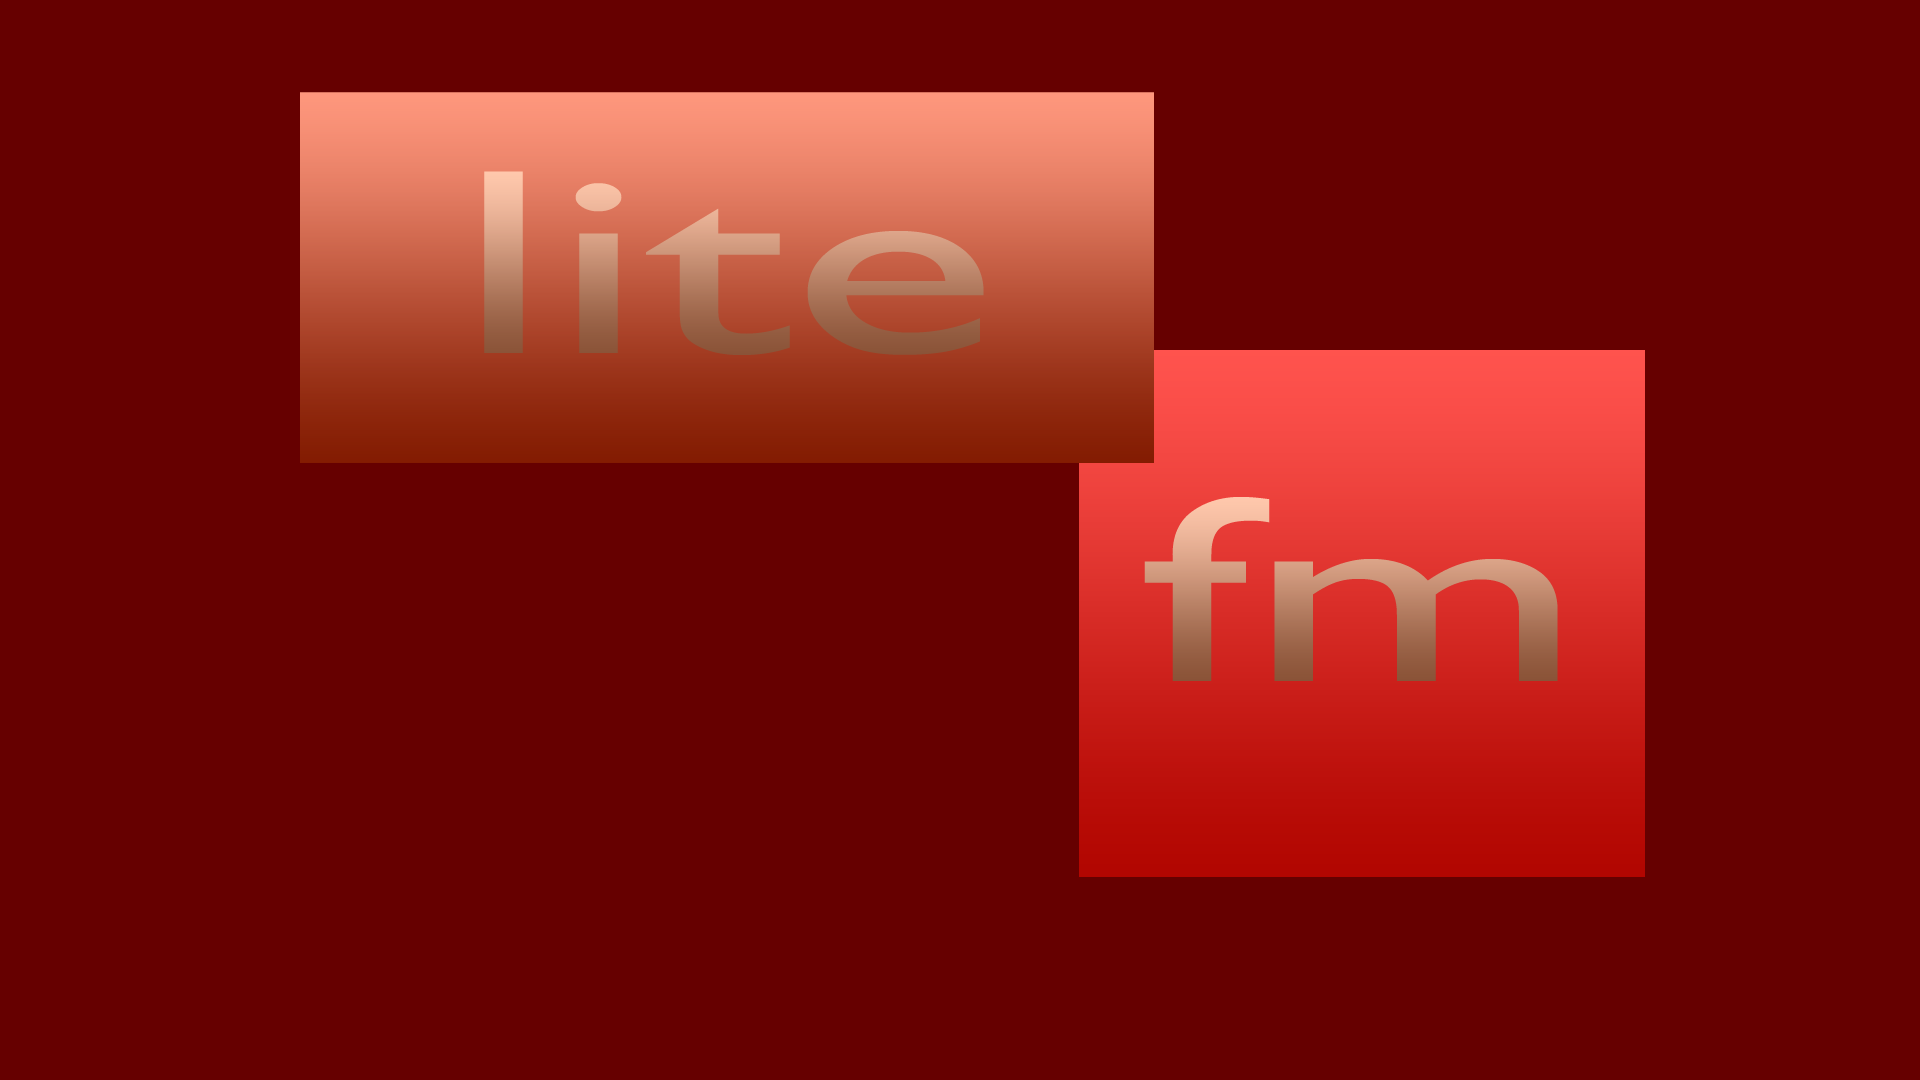 LITE FM